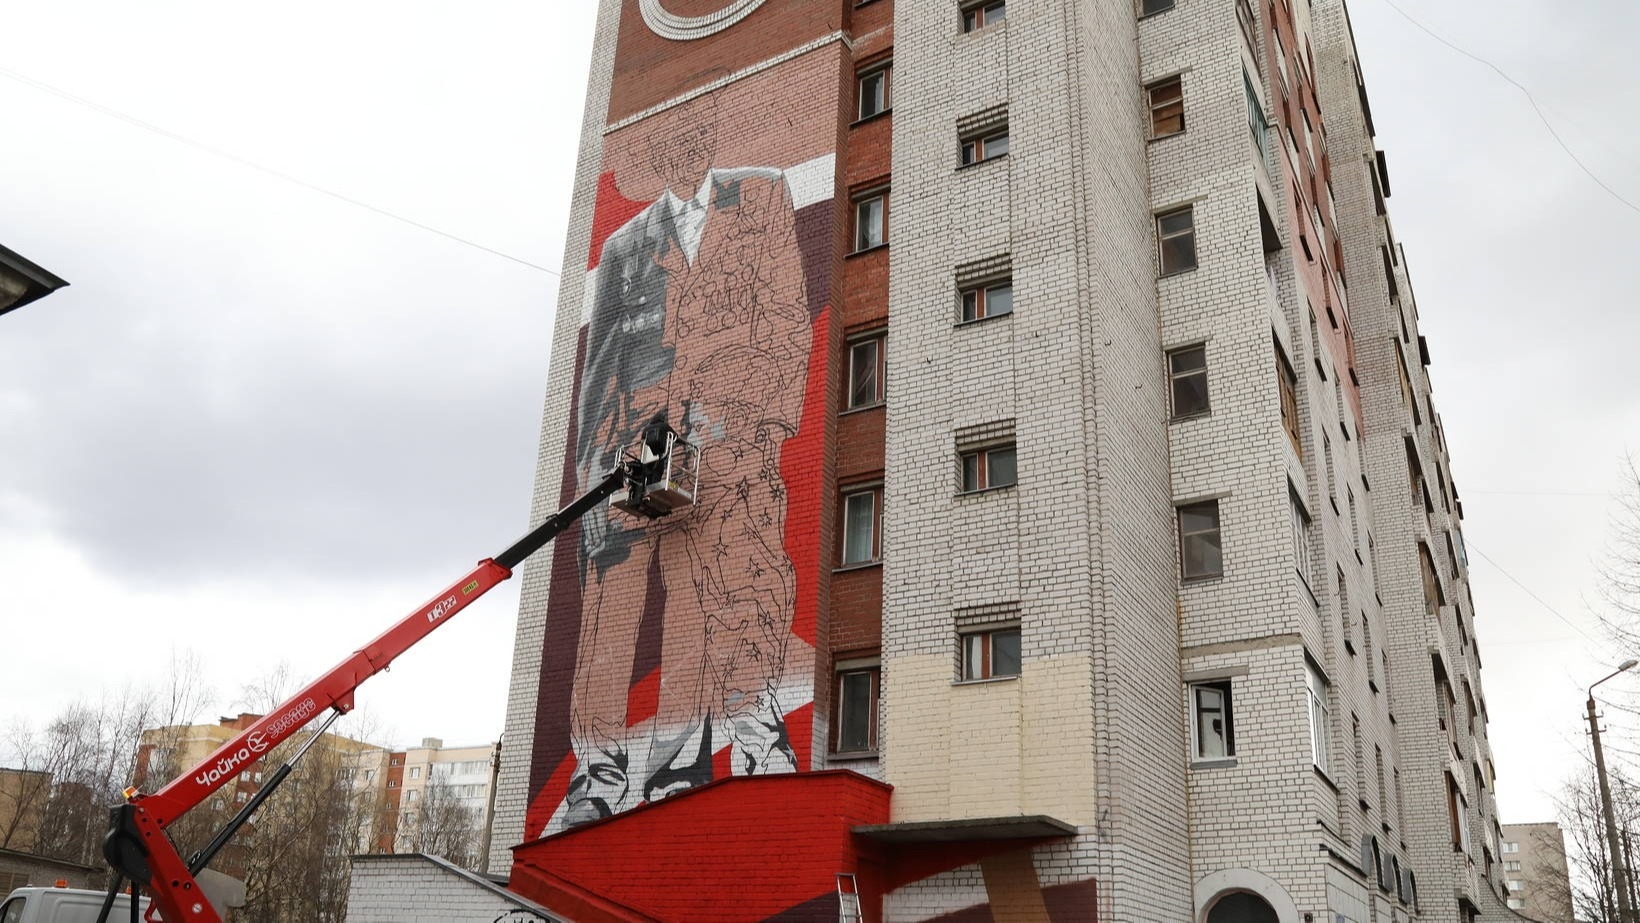 Граффити с изображением ветерана появится на многоэтажке в Архангельске